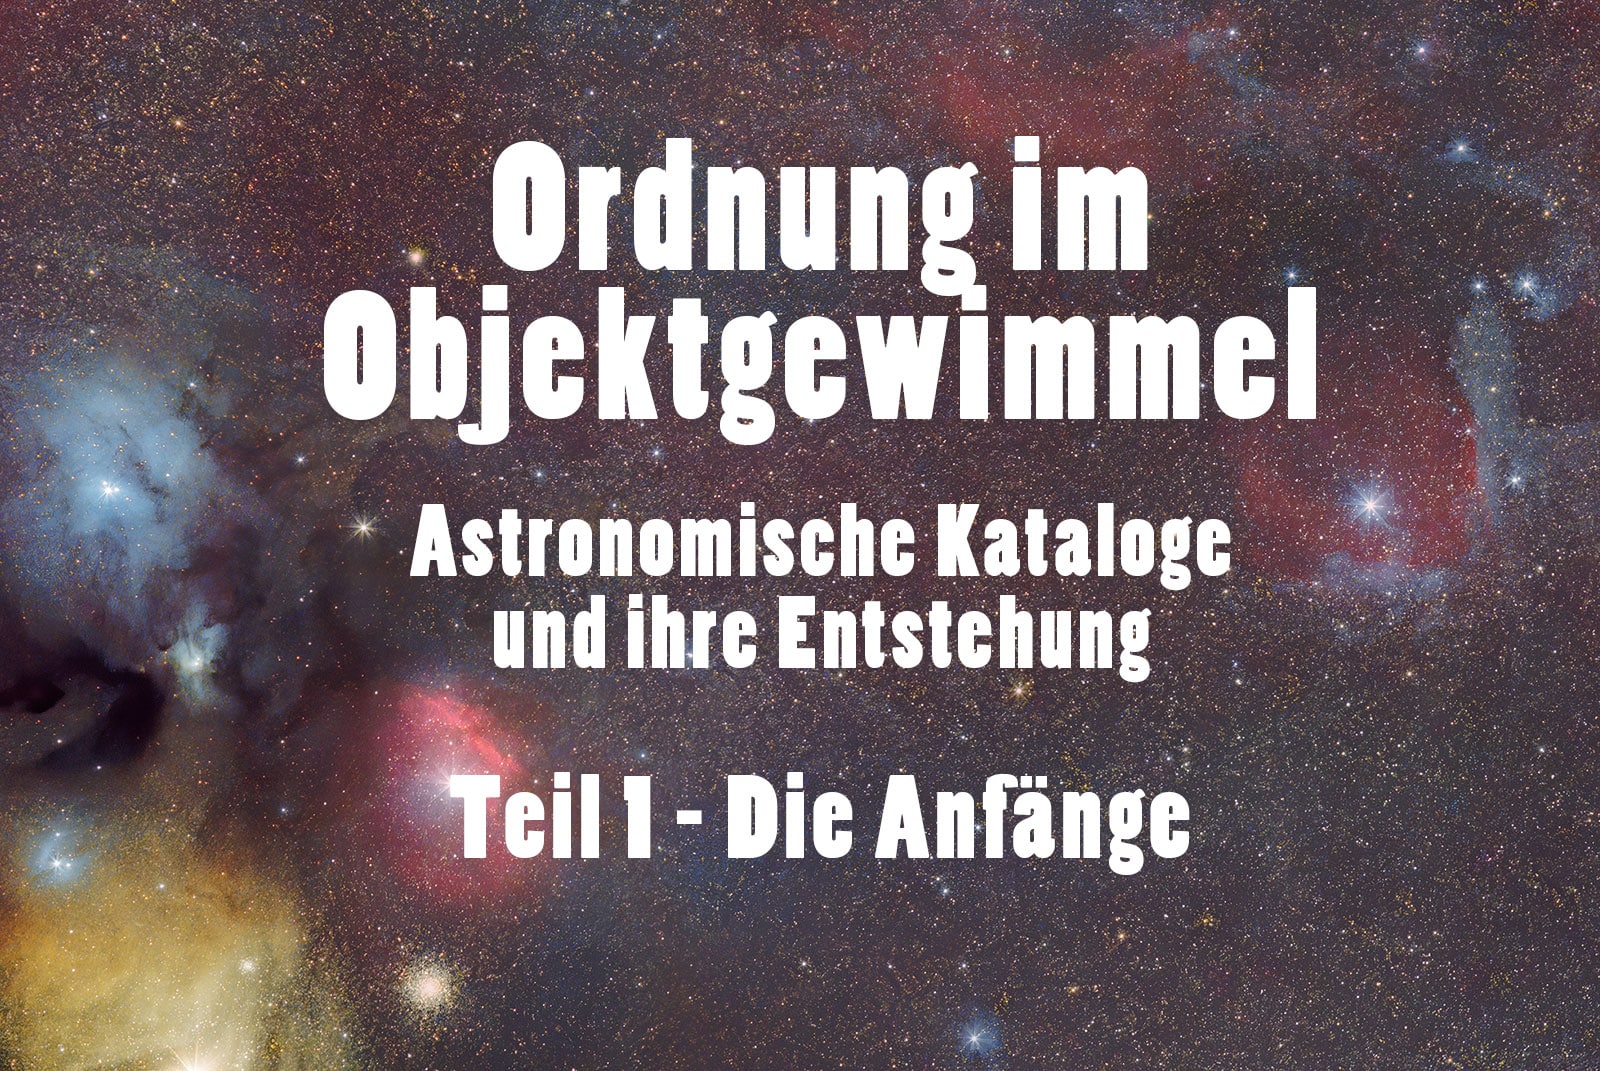 Astronomische Deep-Sky-Kataloge - Geschichte und Entstehung